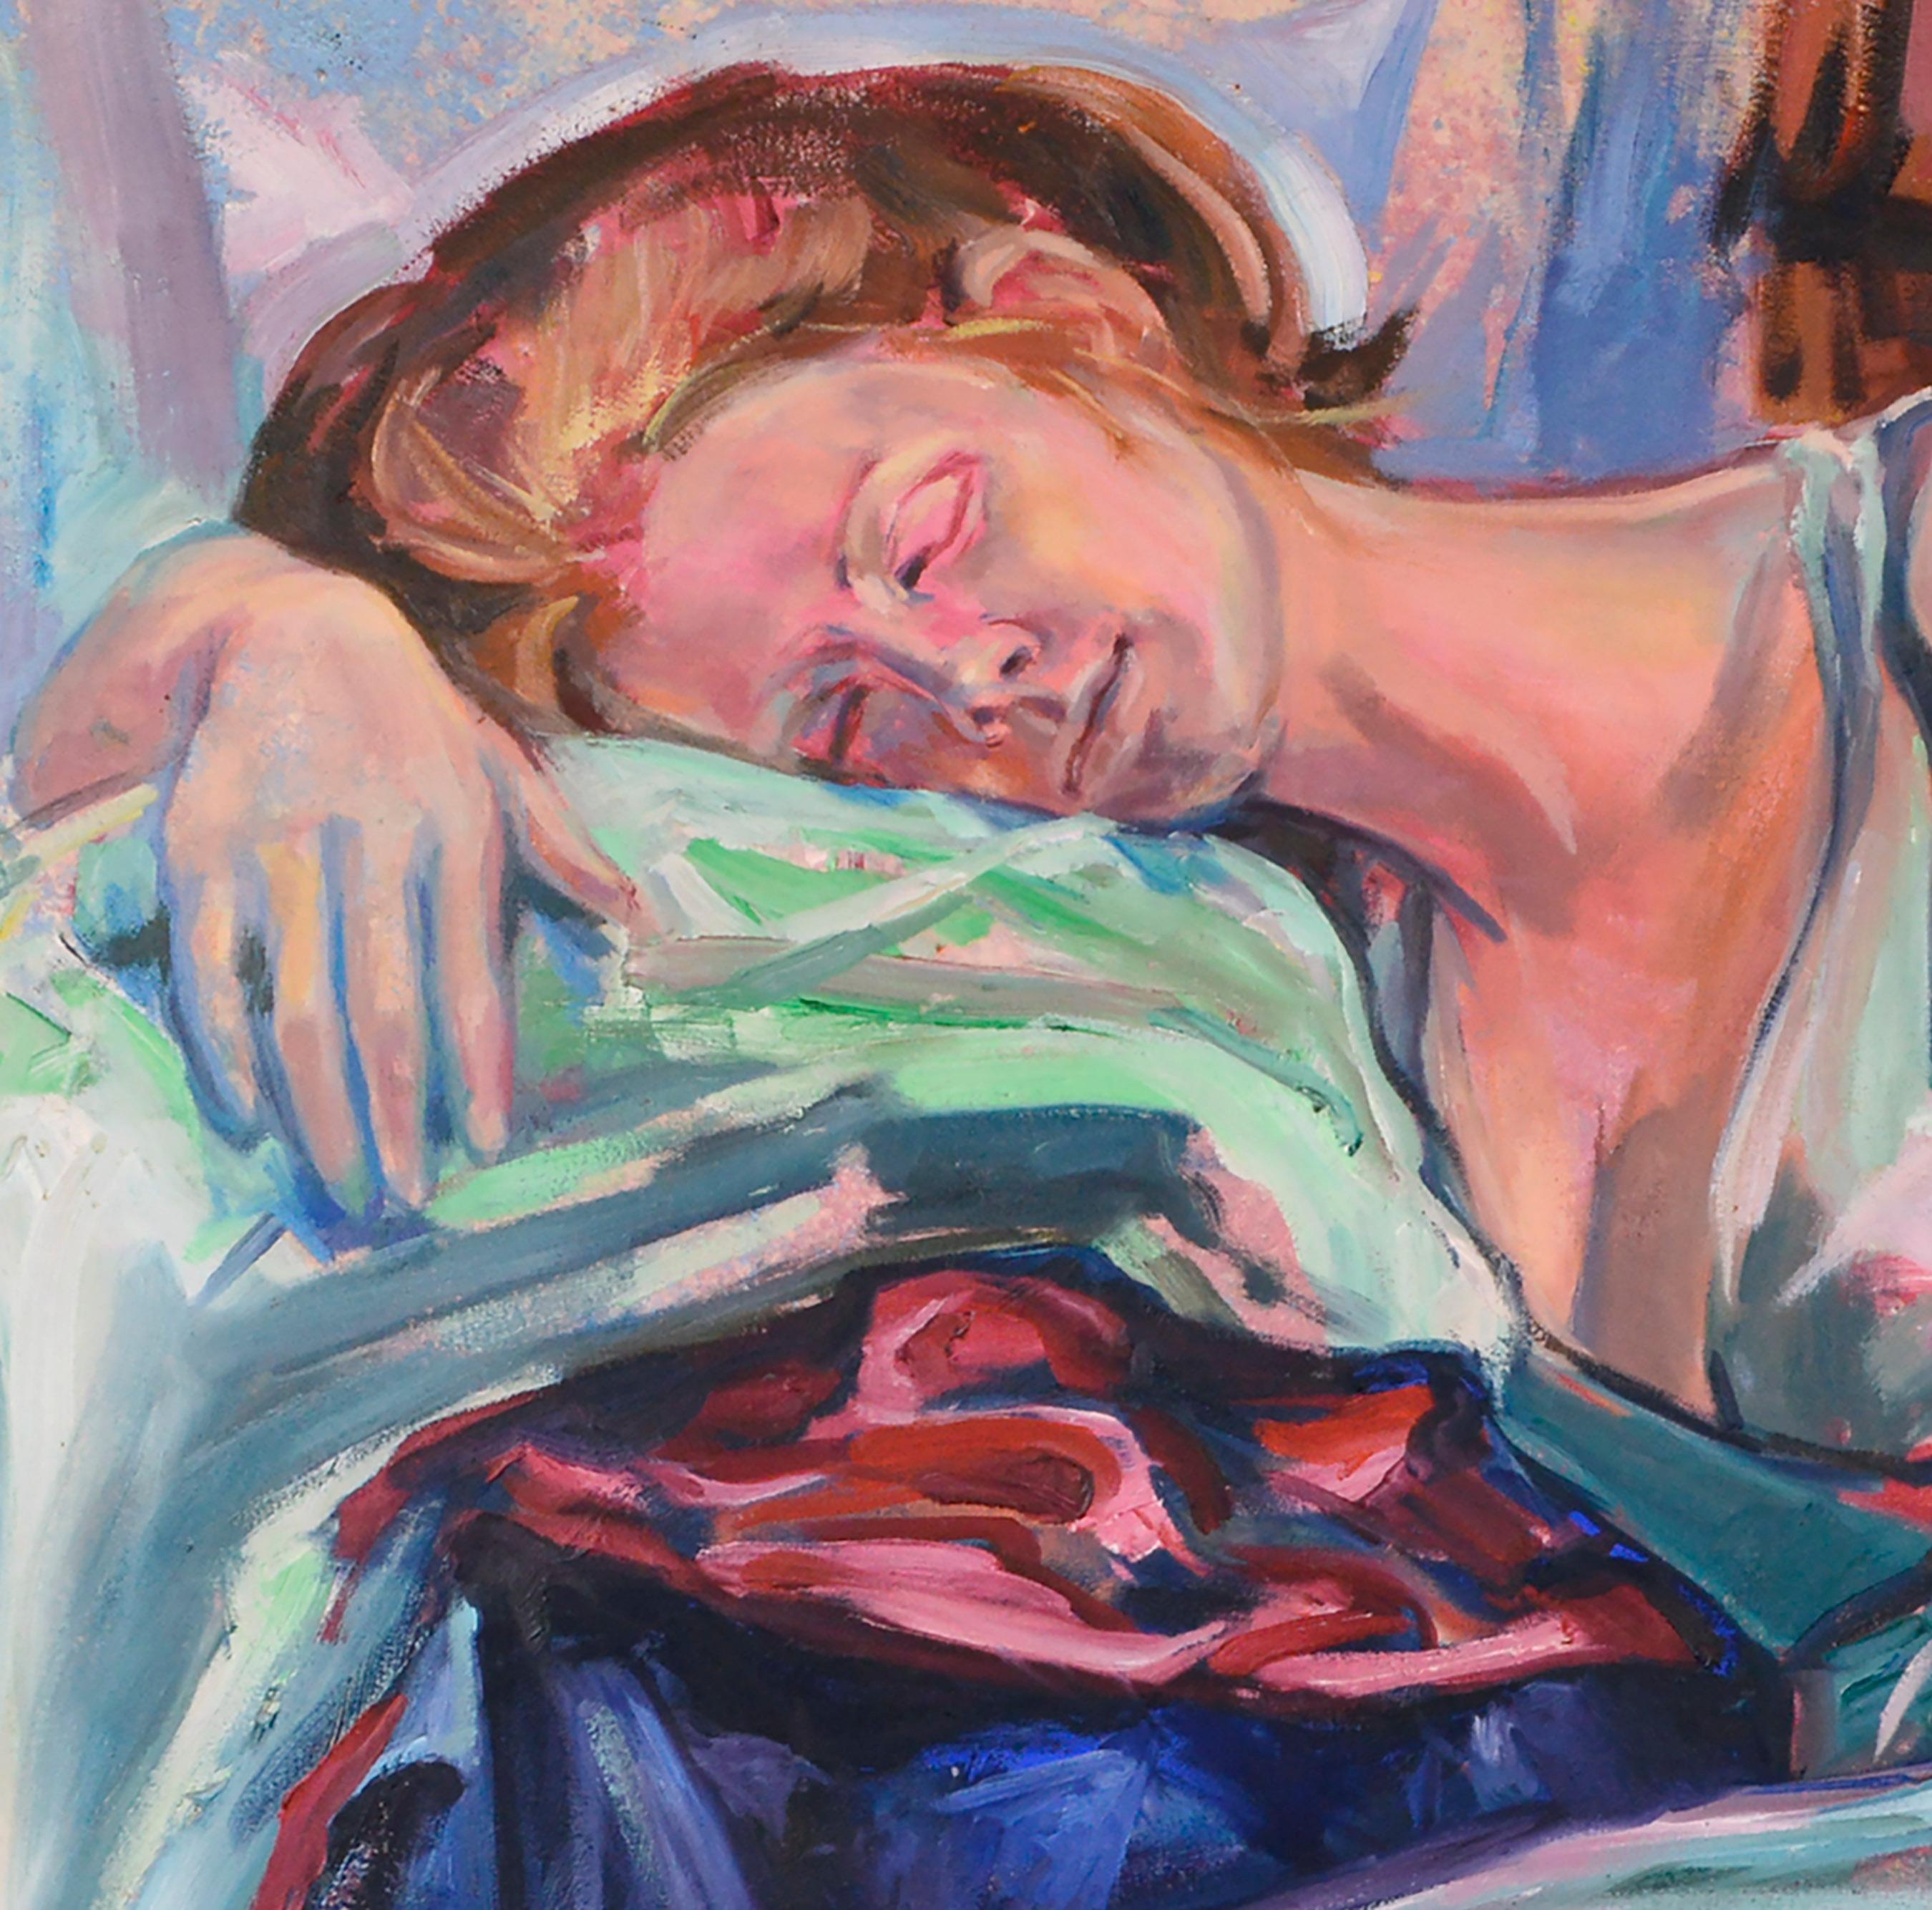 Träumen in der Farbe, expressionistische liegende weibliche Figur  (Expressionismus), Painting, von Rick Rodrigues